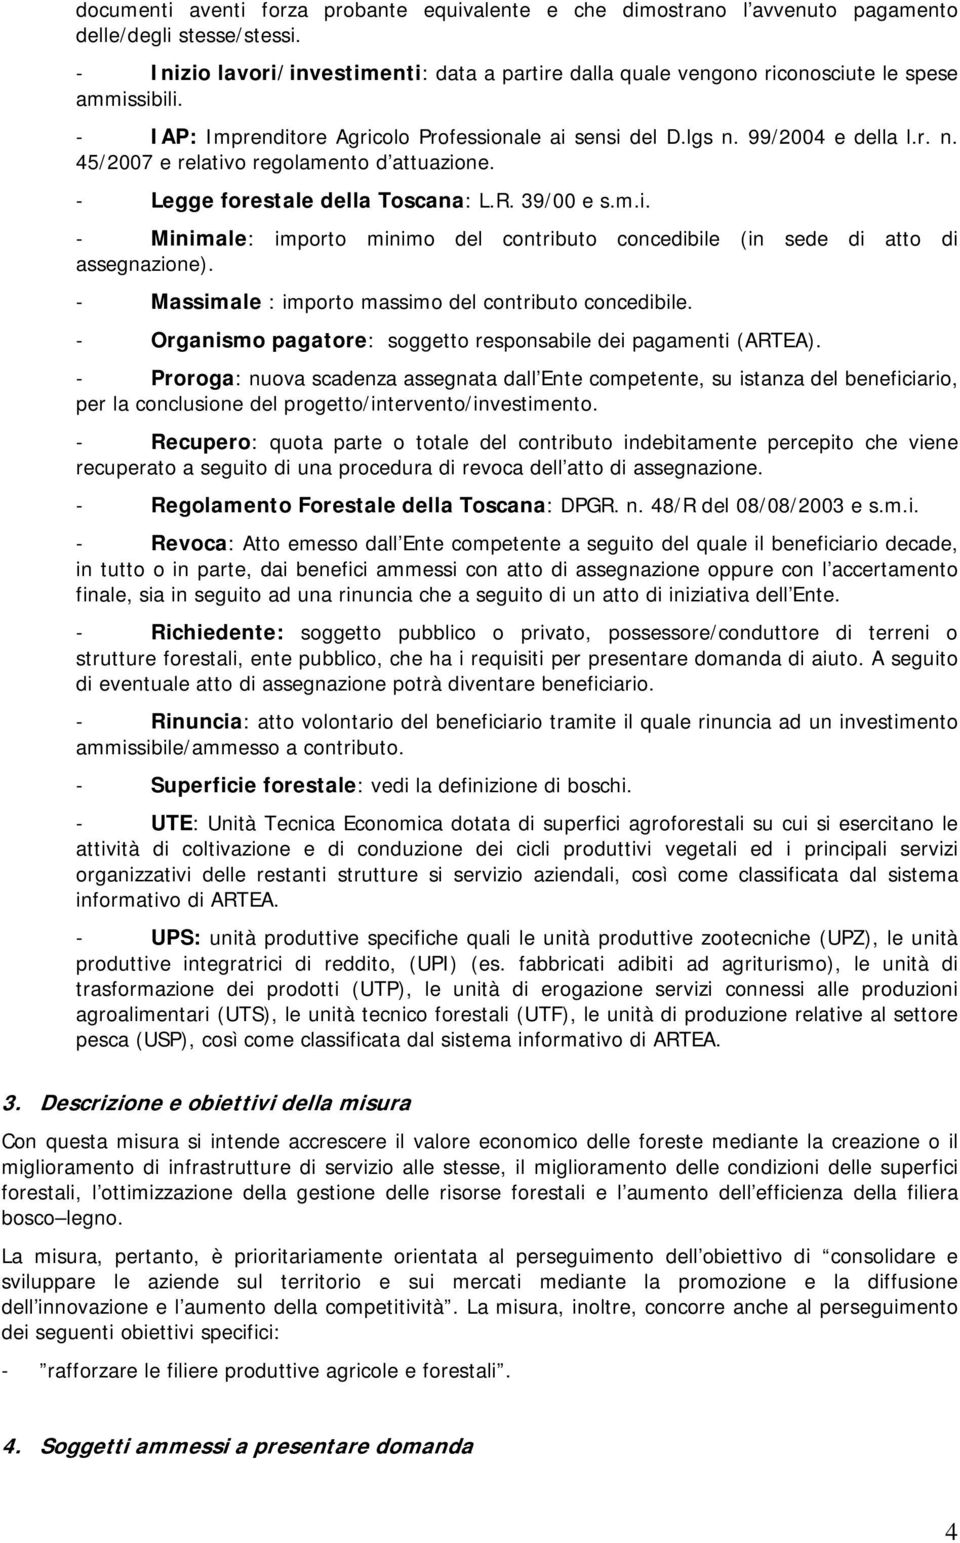 99/2004 e della l.r. n. 45/2007 e relativo regolamento d attuazione. - Legge forestale della Toscana: L.R. 39/00 e s.m.i. - Minimale: importo minimo del contributo concedibile (in sede di atto di assegnazione).